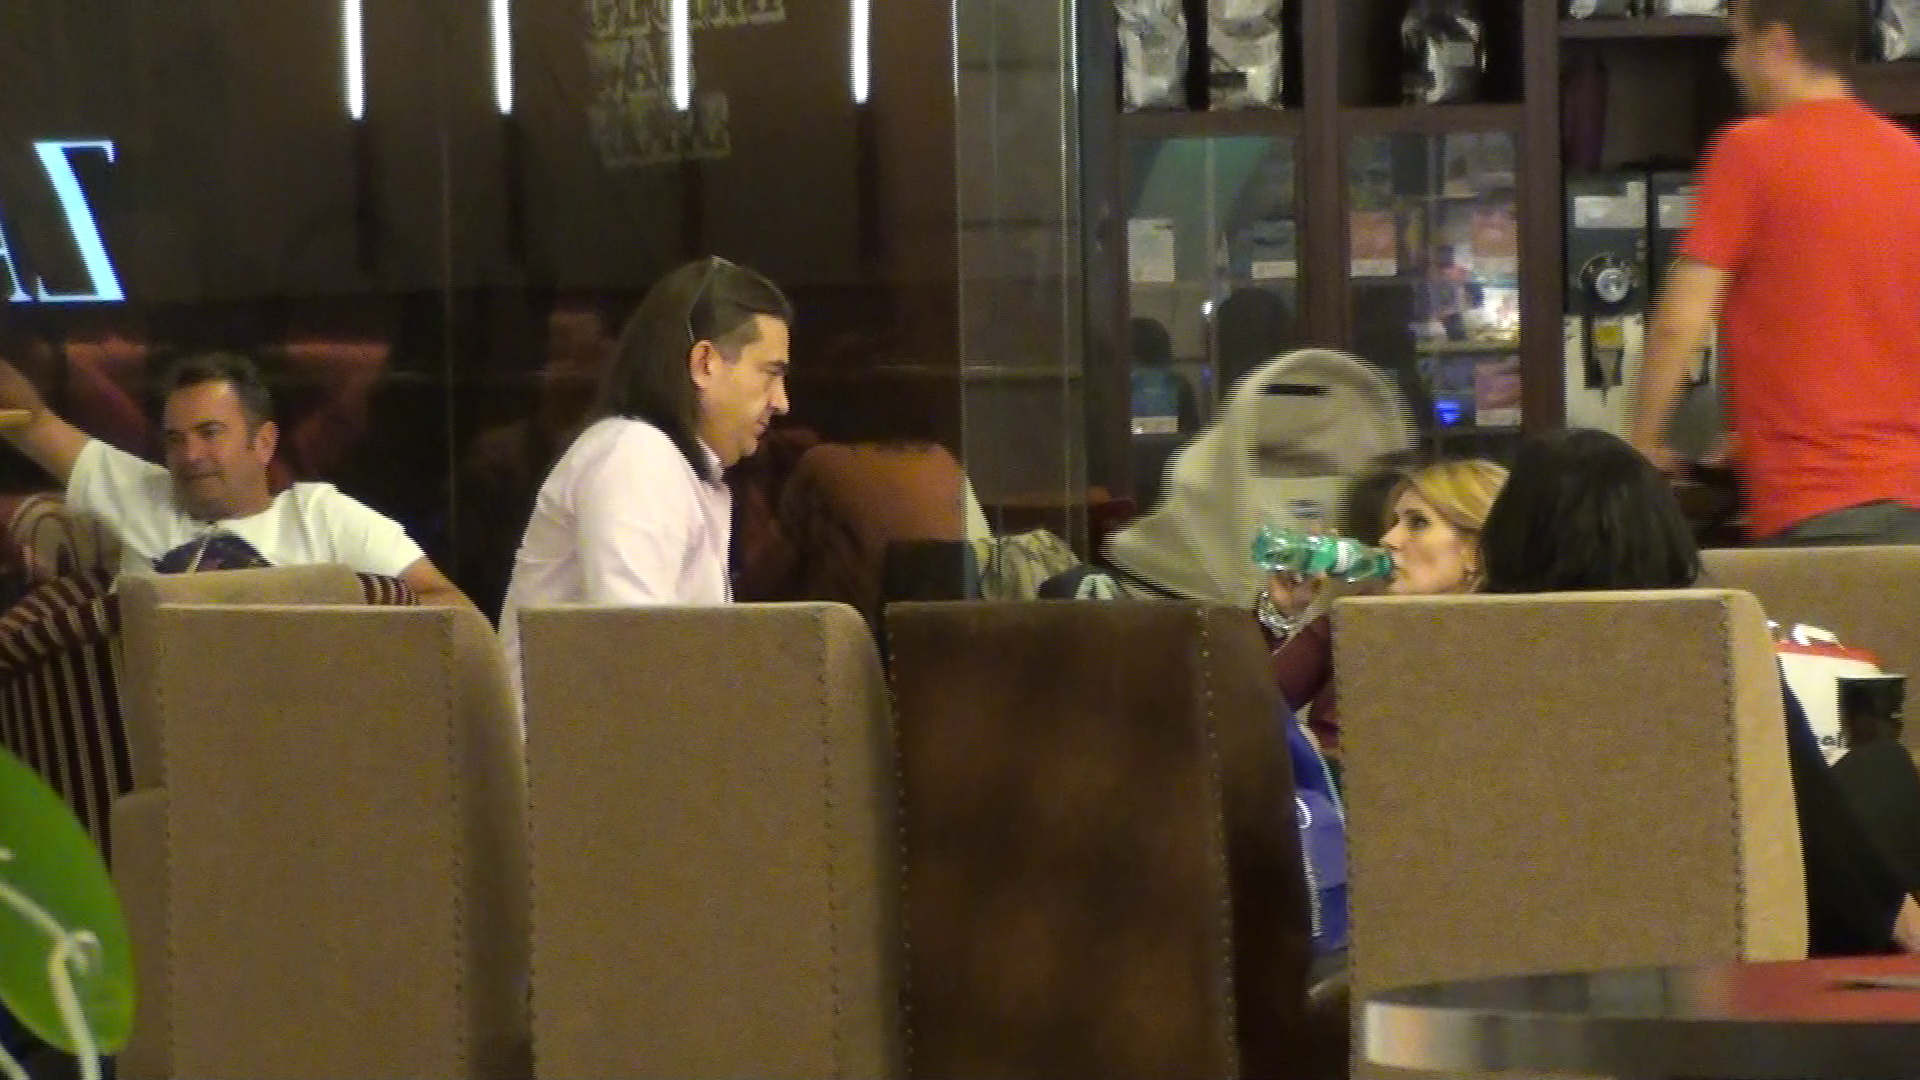 dupa cateva ore de plimbat prin centrul comercial, Alessandra si Sergiu si-au tras sufletul la o cafenea